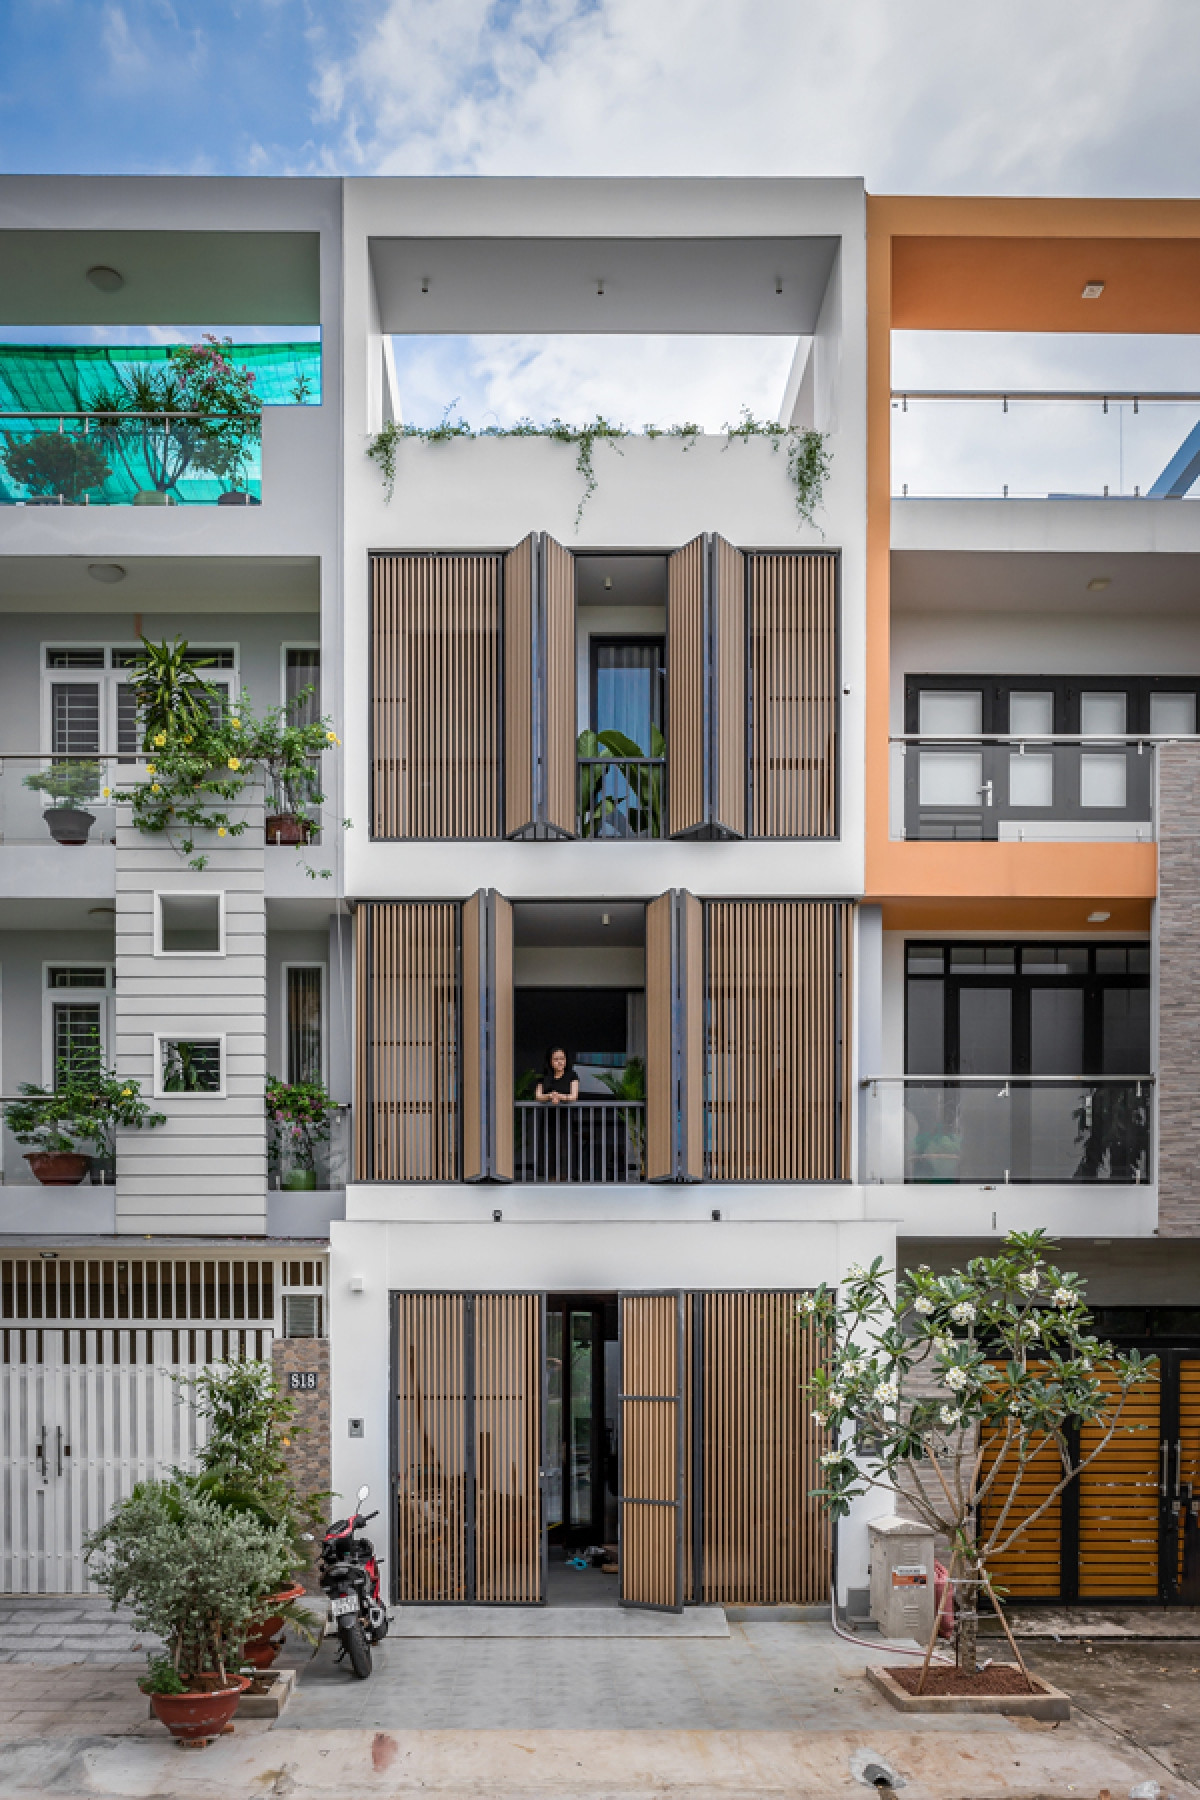 Ngôi nhà có dạng nhà phố nằm trong một khu dân cư mới ở huyện Nhà Bè, TP Hồ Chí Minh. Theo quy hoạch, các lô nhà phải xây đúng quy định về quy mô, chiều cao các tầng. Dù vậy, công trình vẫn có nét riêng nhờ hệ lam phủ mặt tiền, có tác dụng chắn nắng và tạo sự kín đáo nhất định.